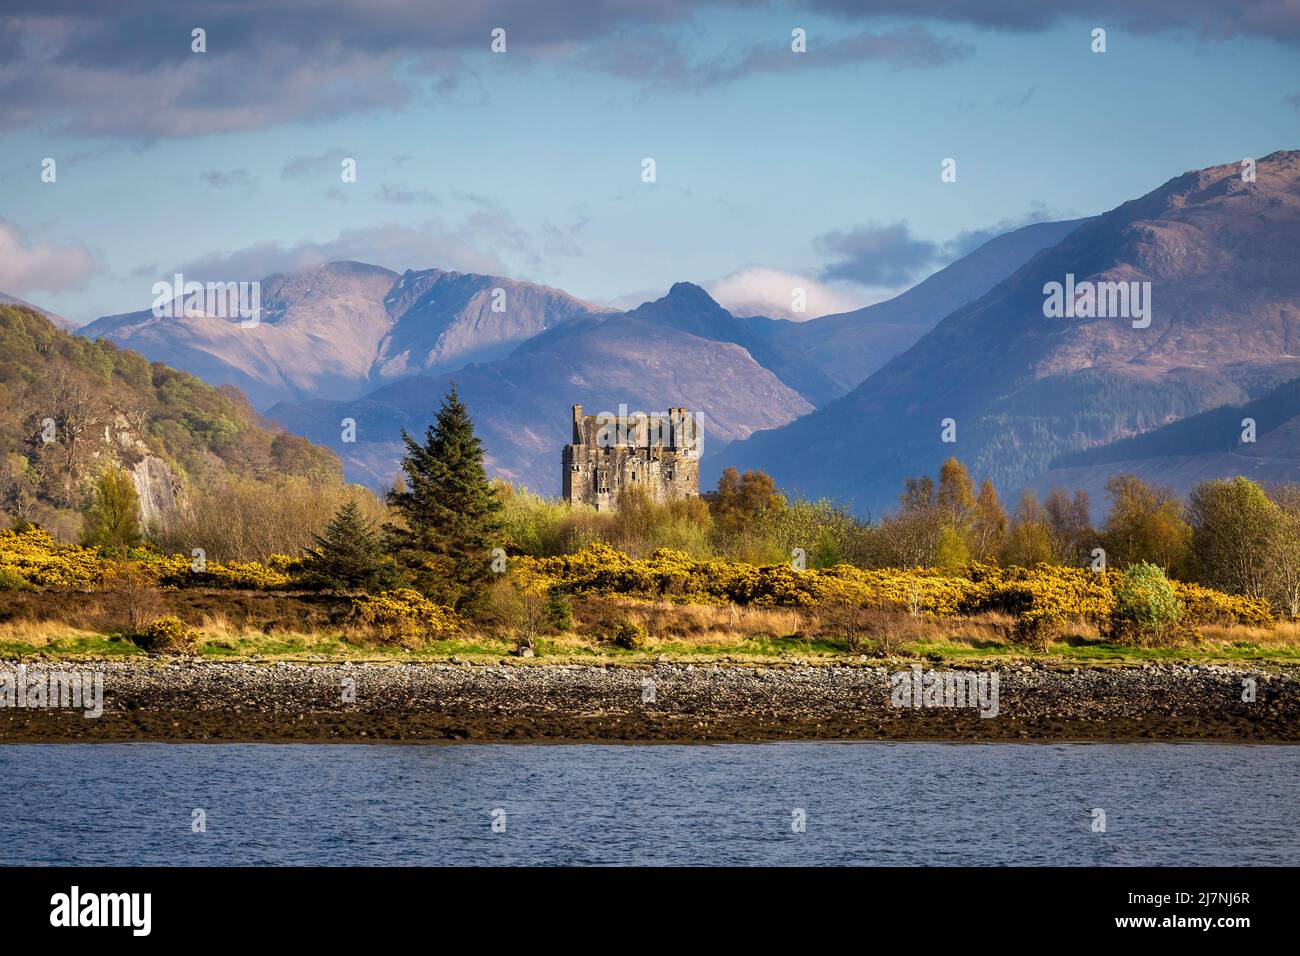 Editorial Scotland, Royaume-Uni - 24 avril 2022 : le spectaculaire château Eilean Donan niché au milieu des montagnes de l'Ecosse, Royaume-Uni. Banque D'Images